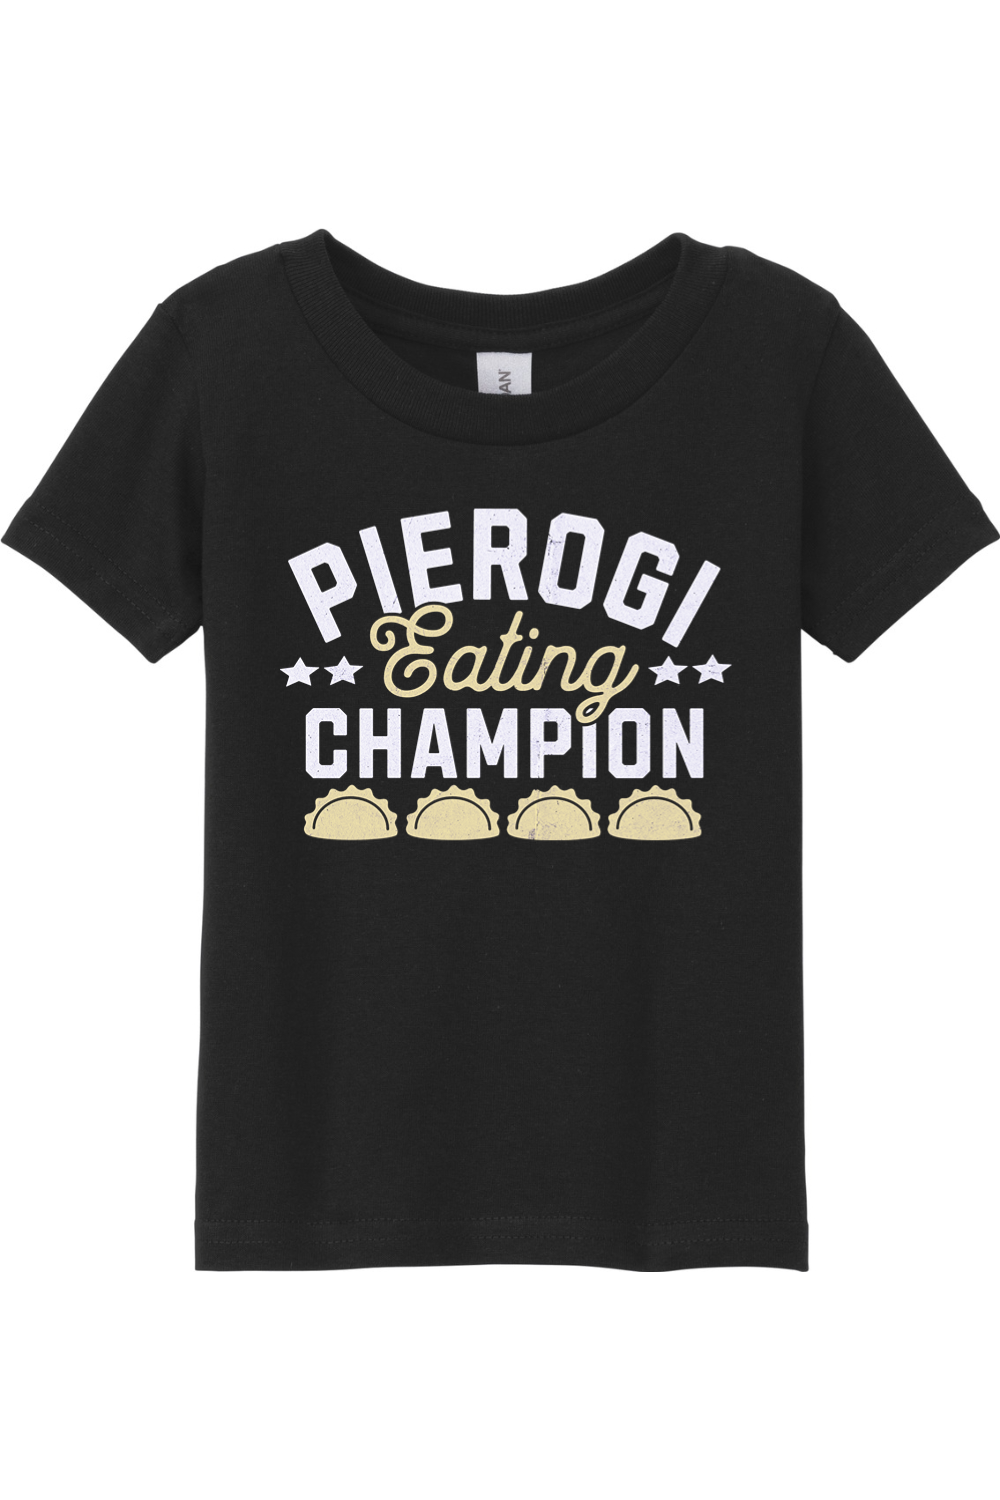 Pierogi Eating Champion - Toddler T-Shirt - Yinzylvania